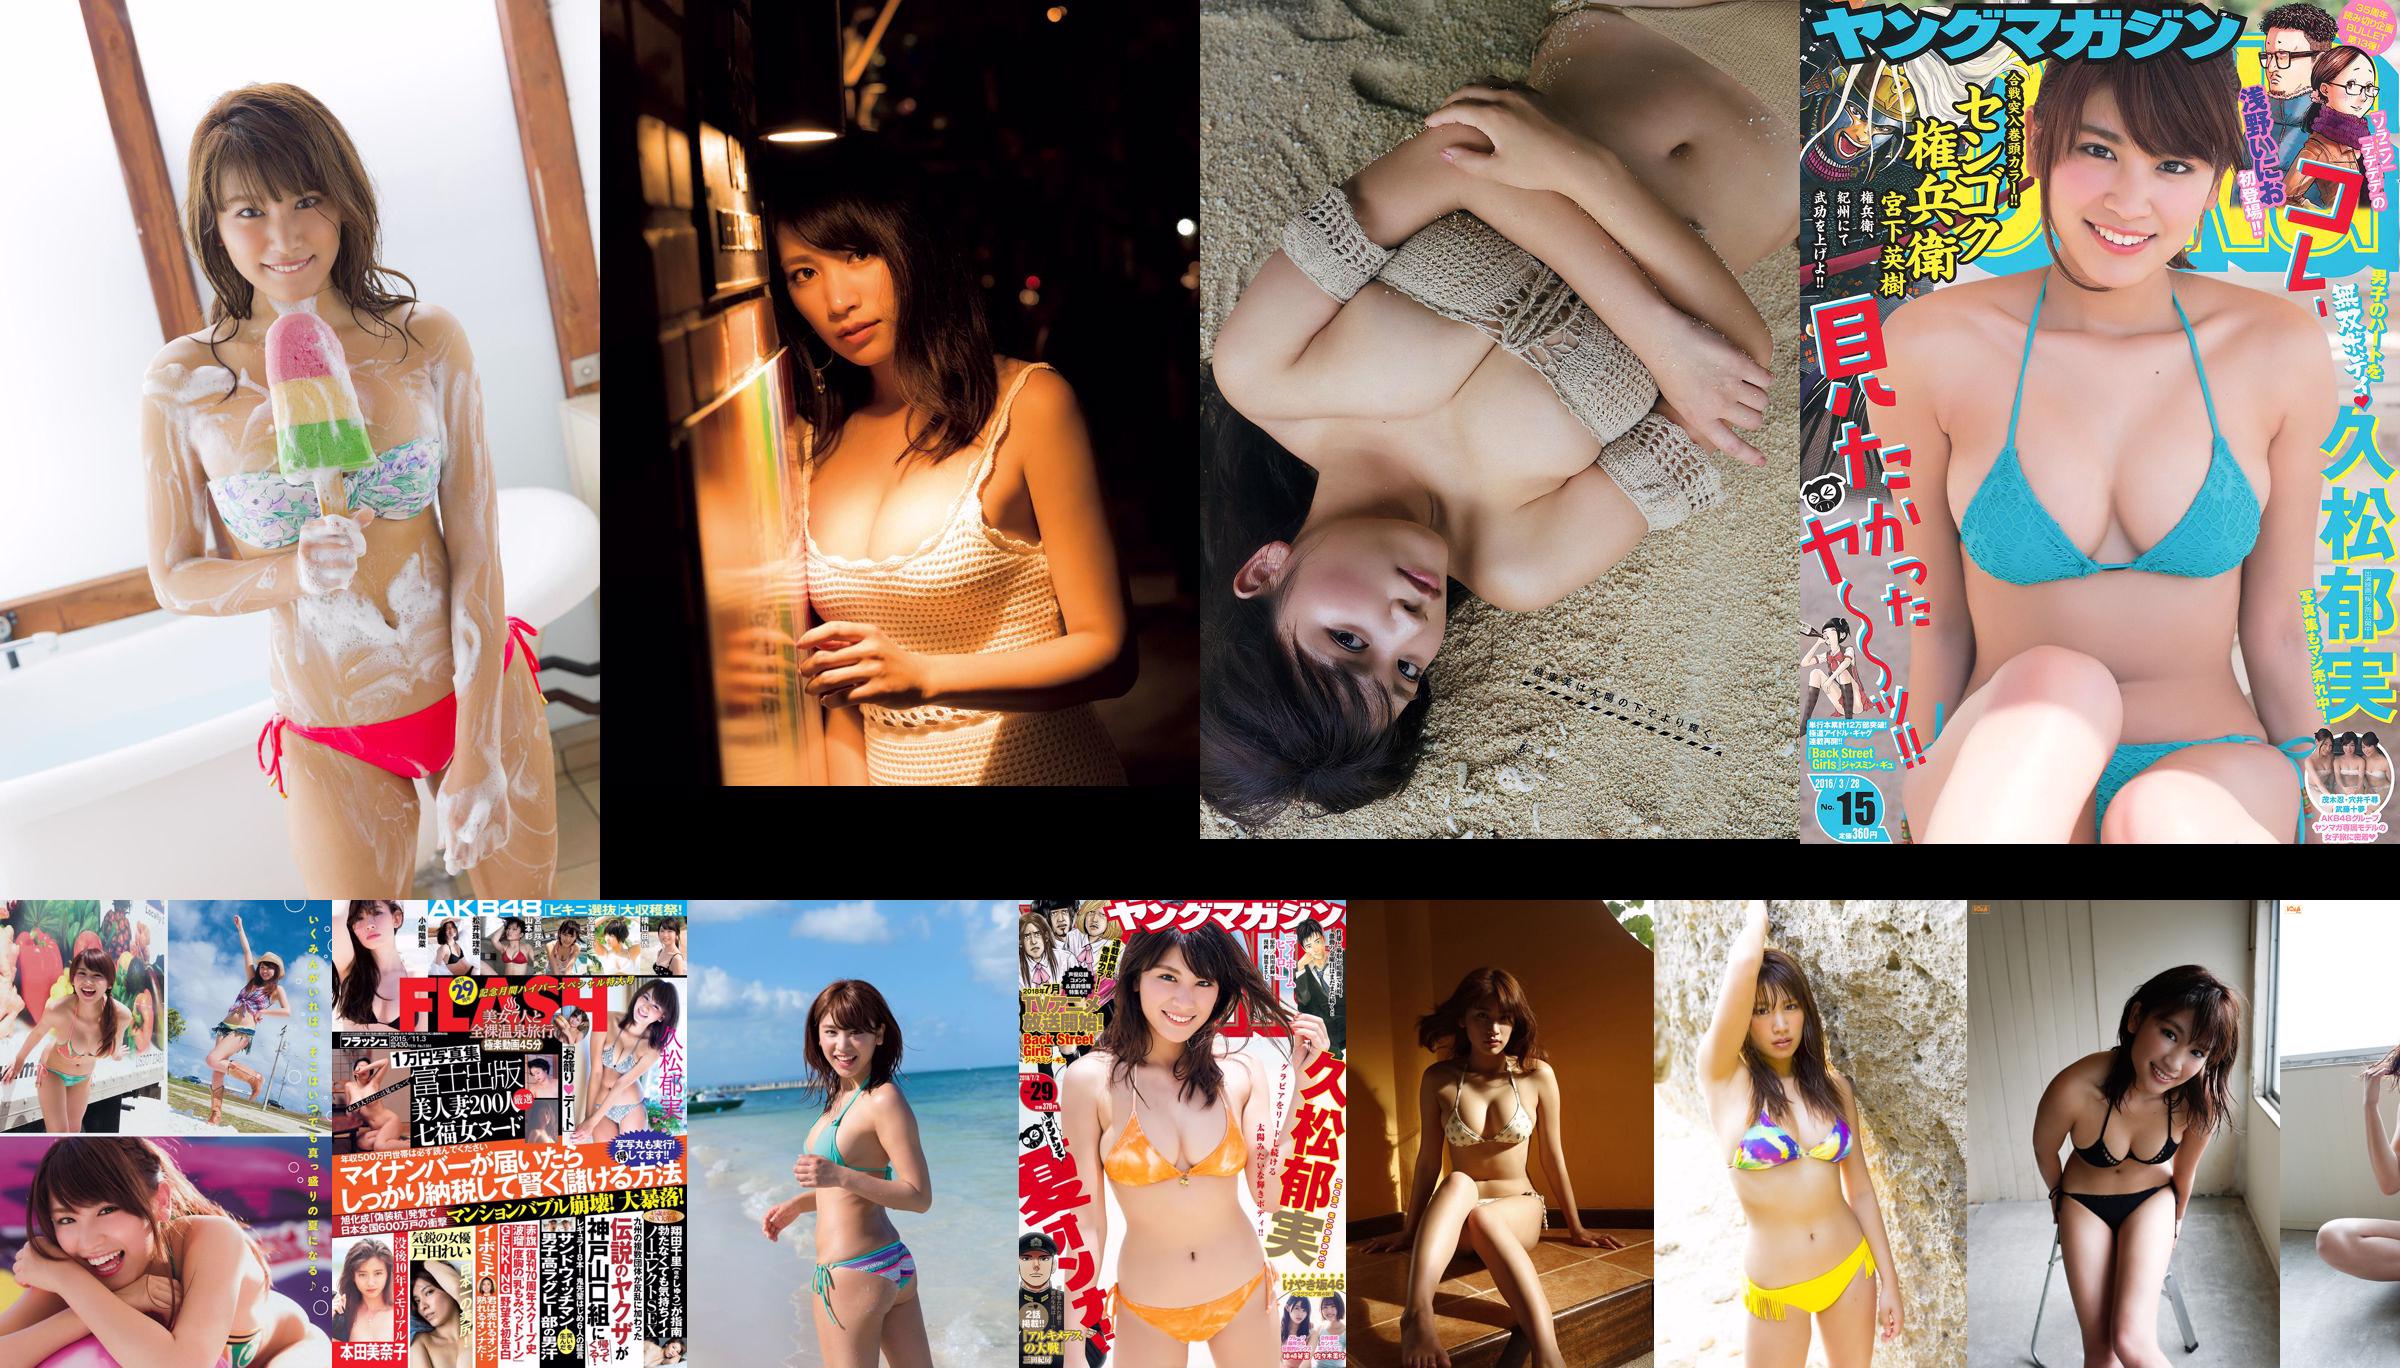 [Young Magazine] Hisamatsu Ikumi Aoyama, 2015 No.09 Photo Magazine No.5680a1 Pagina 1